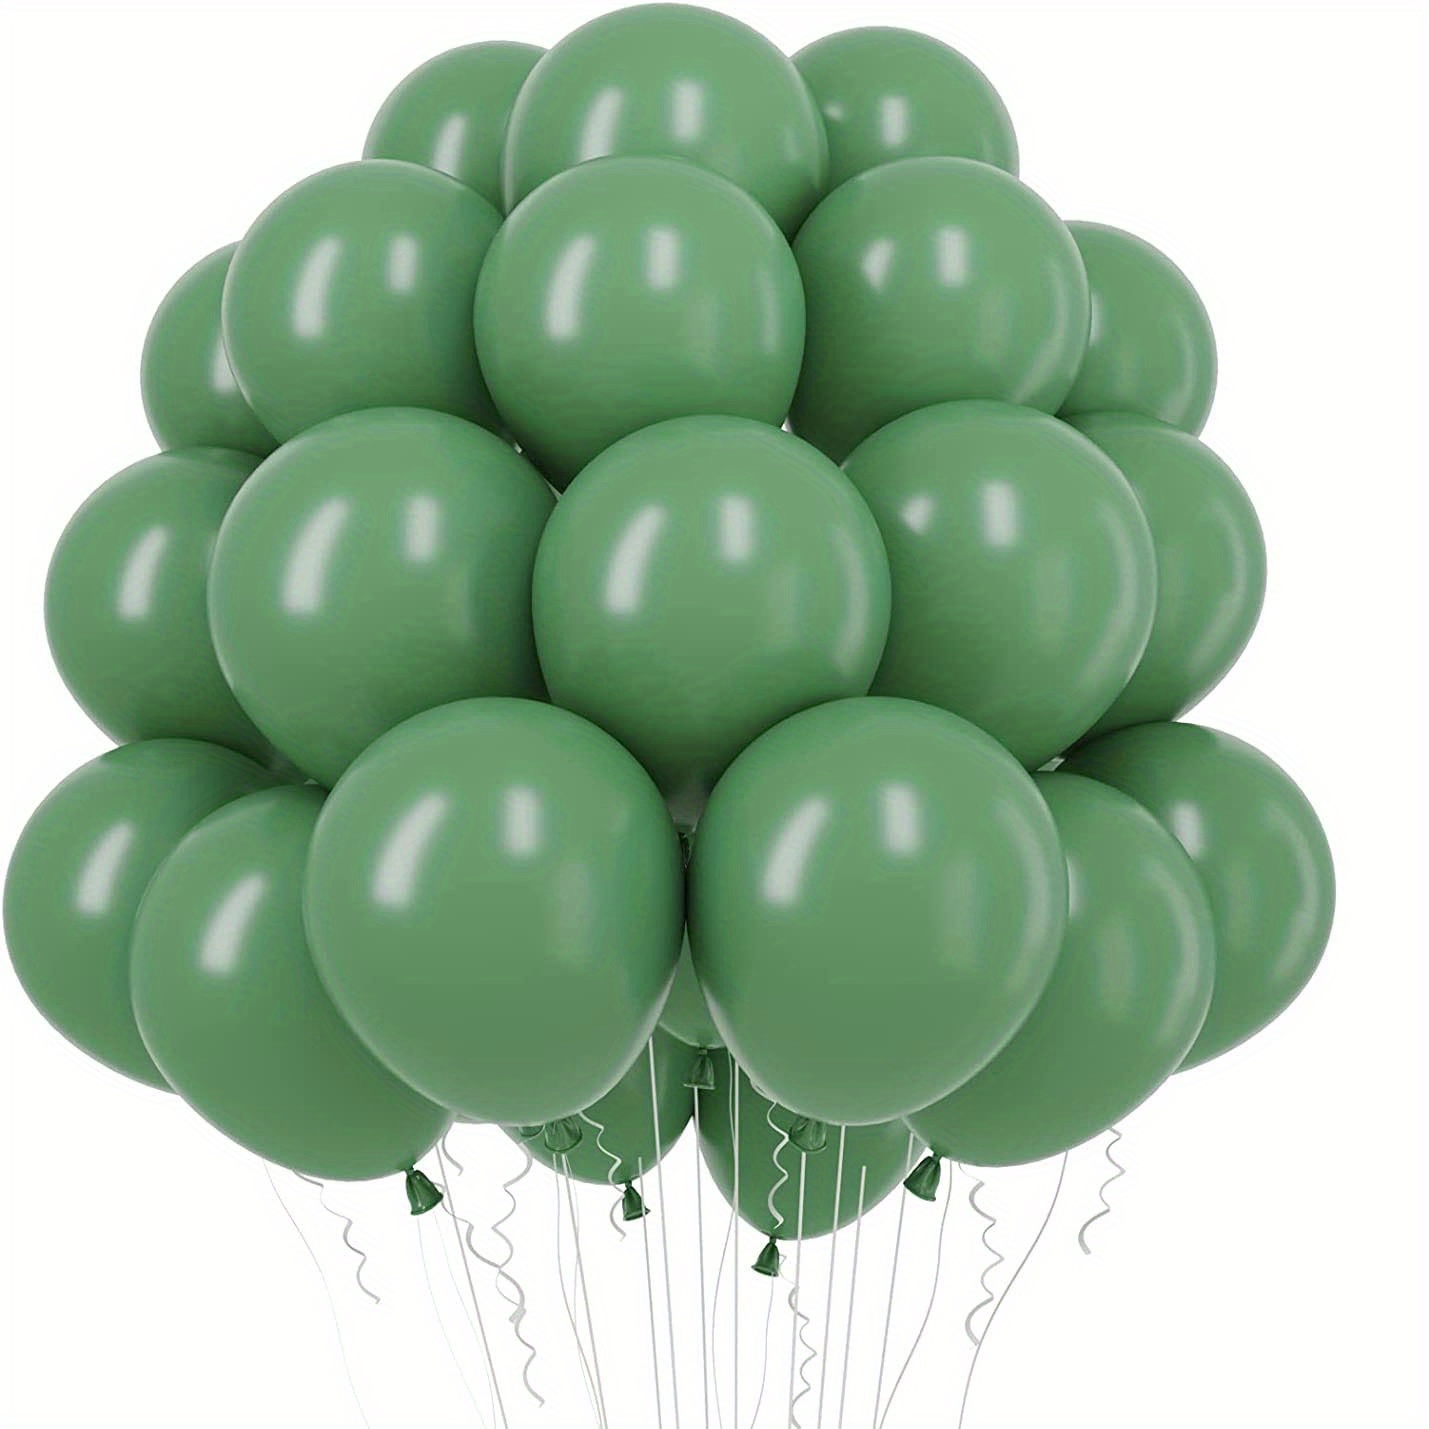 10 Globos verde oscuro Ø25 cm para cumpleaños y fiestas